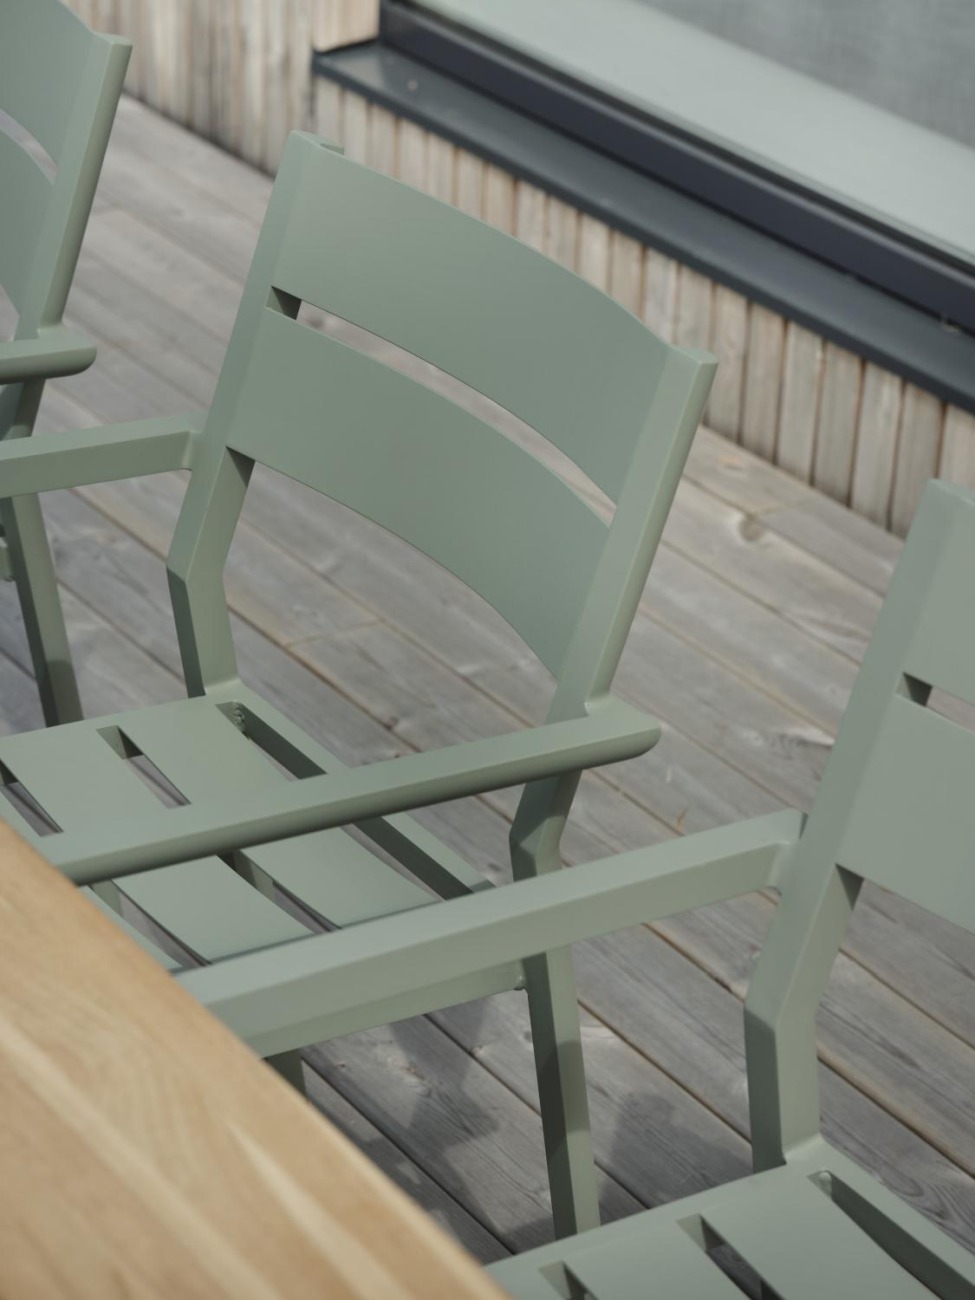 Der Gartenstuhl Delia überzeugt mit seinem modernen Design. Gefertigt wurde er aus Metall, welches einen hellgrünen Farbton besitzt. Das Gestell ist auch aus Metall und hat eine grüne Farbe. Die Sitzhöhe des Stuhls beträgt 43 cm.